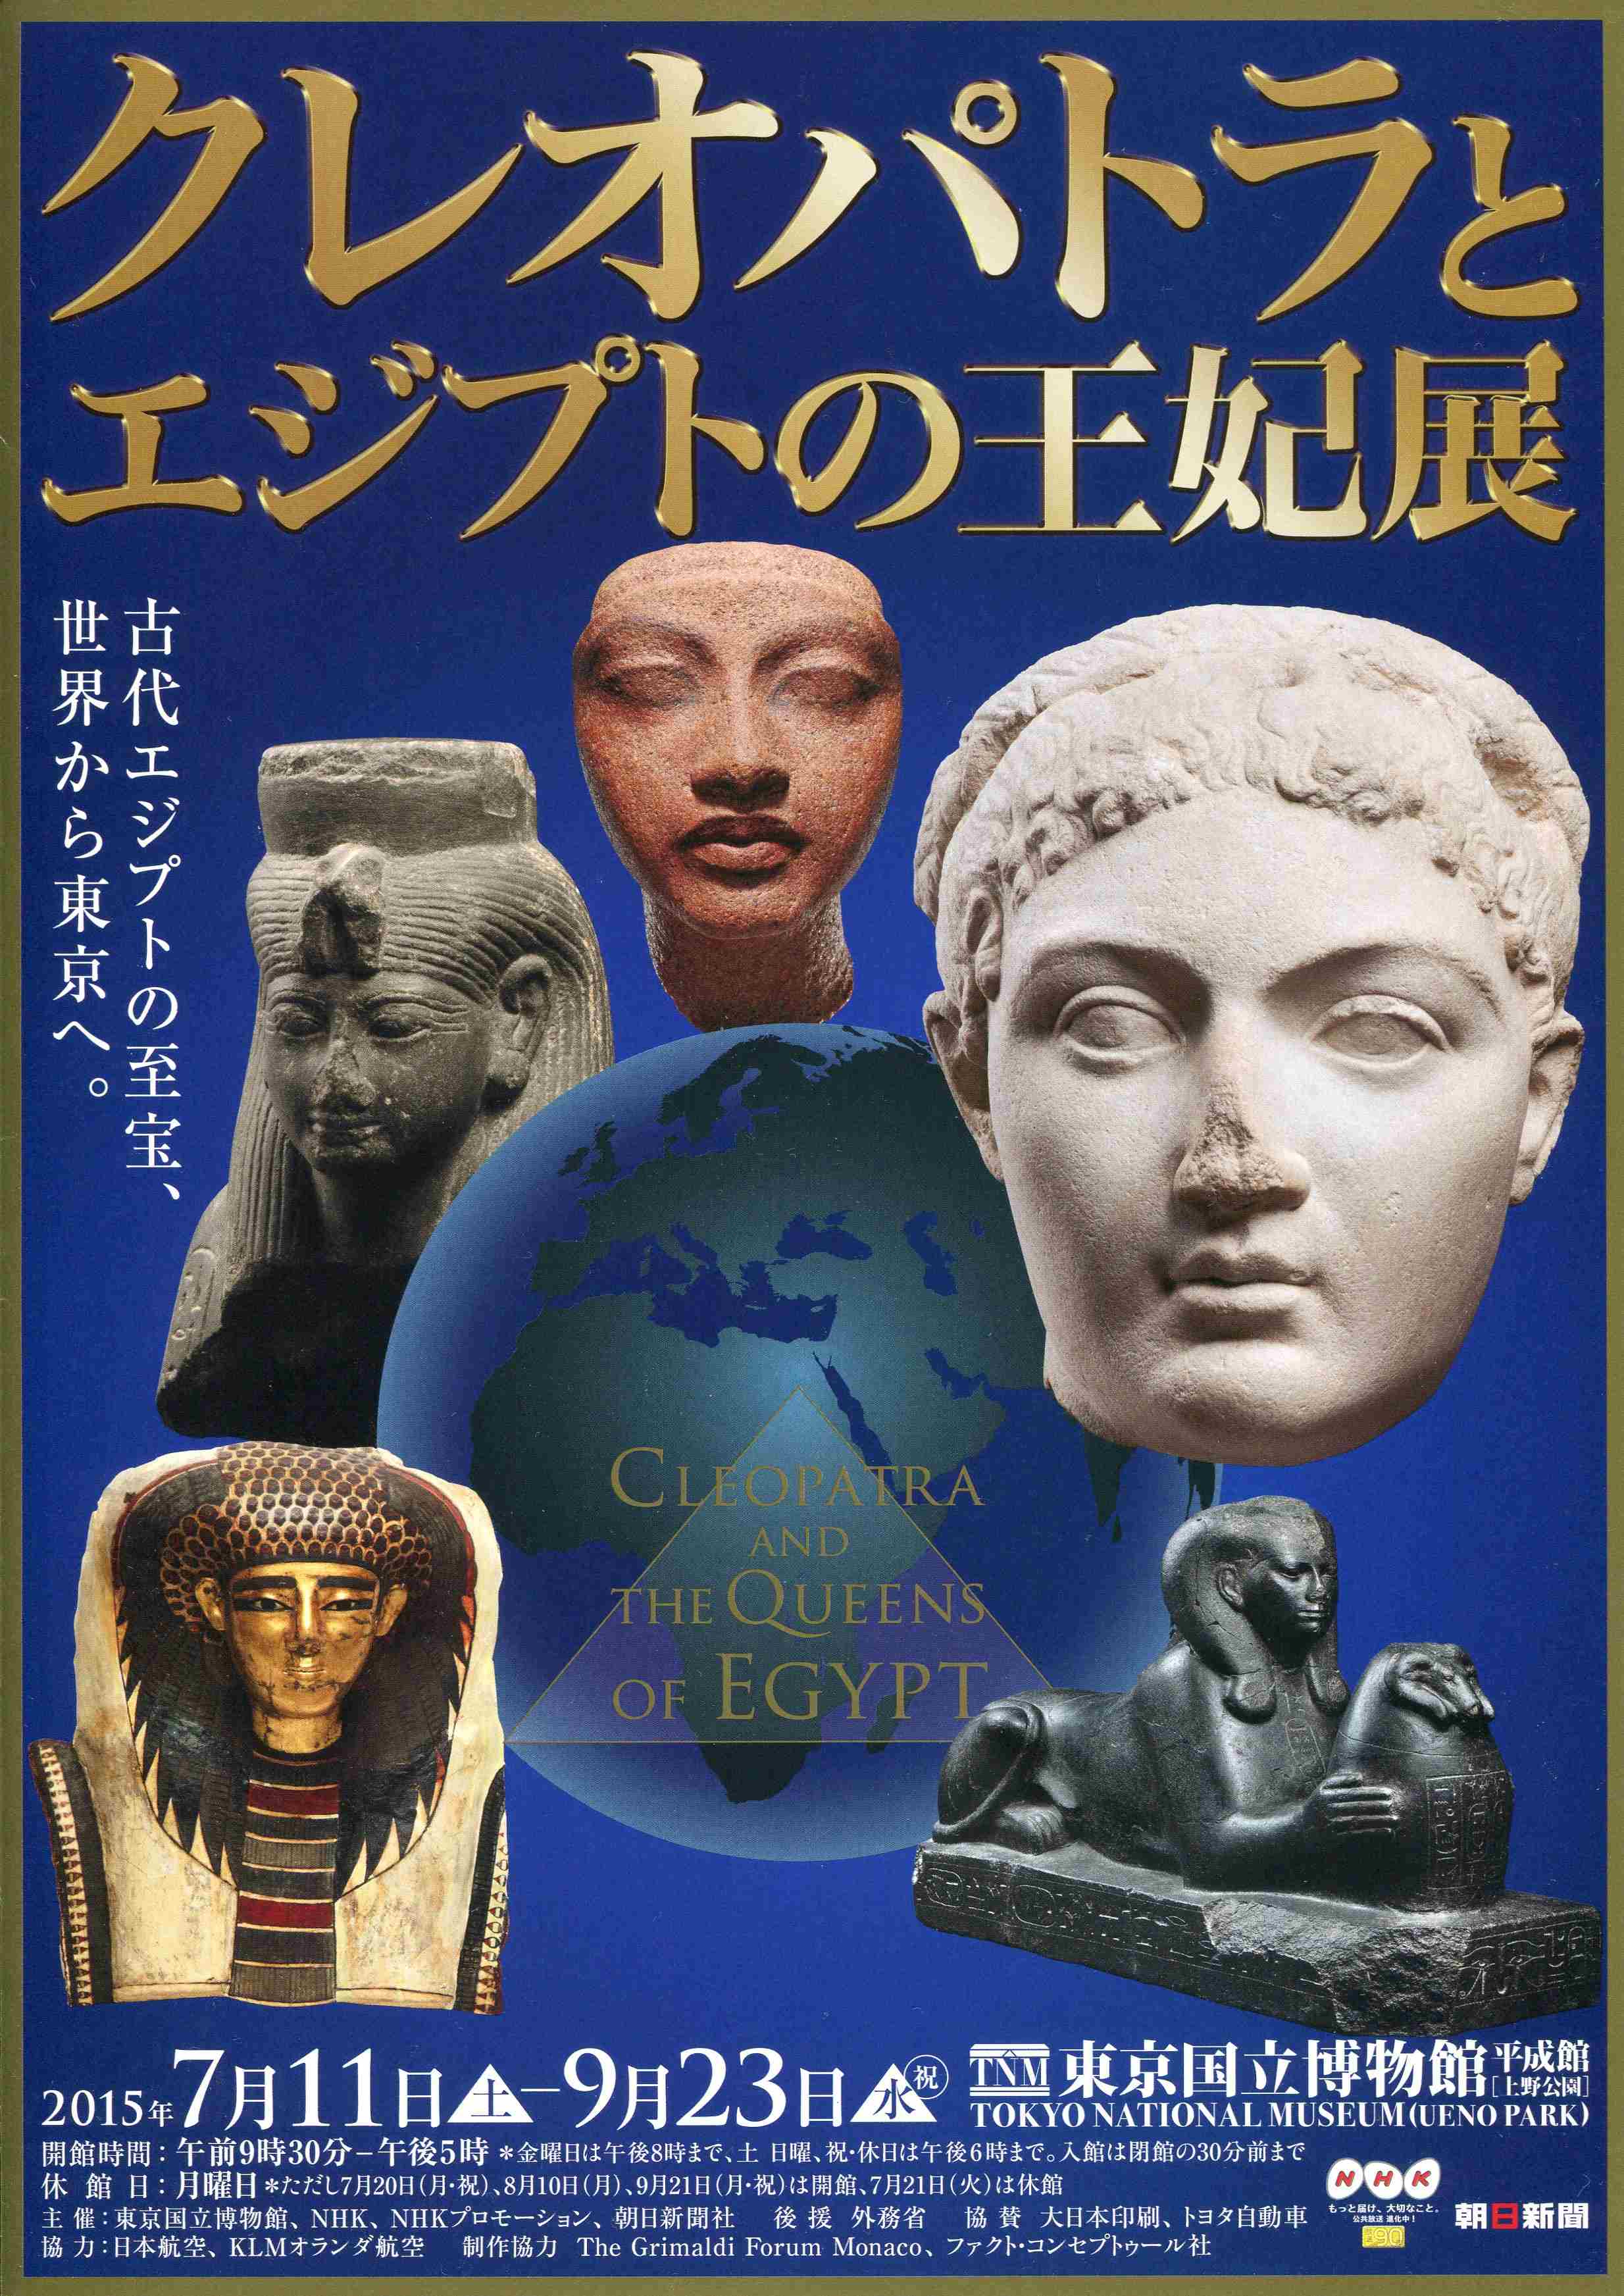 猫アリーナ 「クレオパトラとエジプトの王妃展」 東京国立博物館